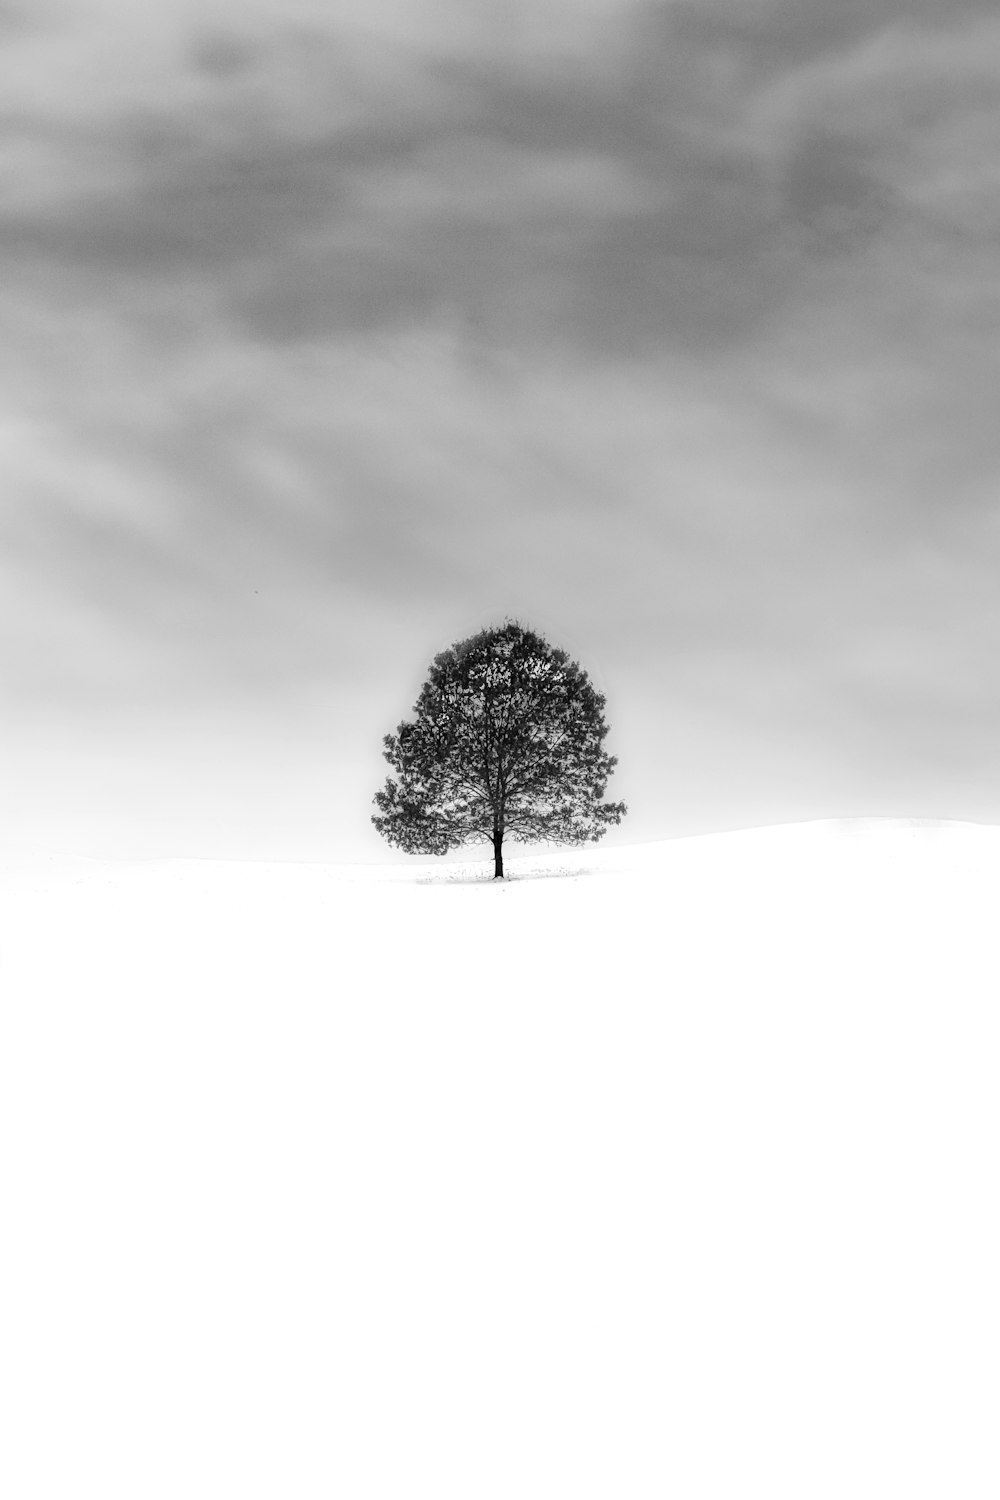 Un arbre solitaire au milieu d’un champ enneigé